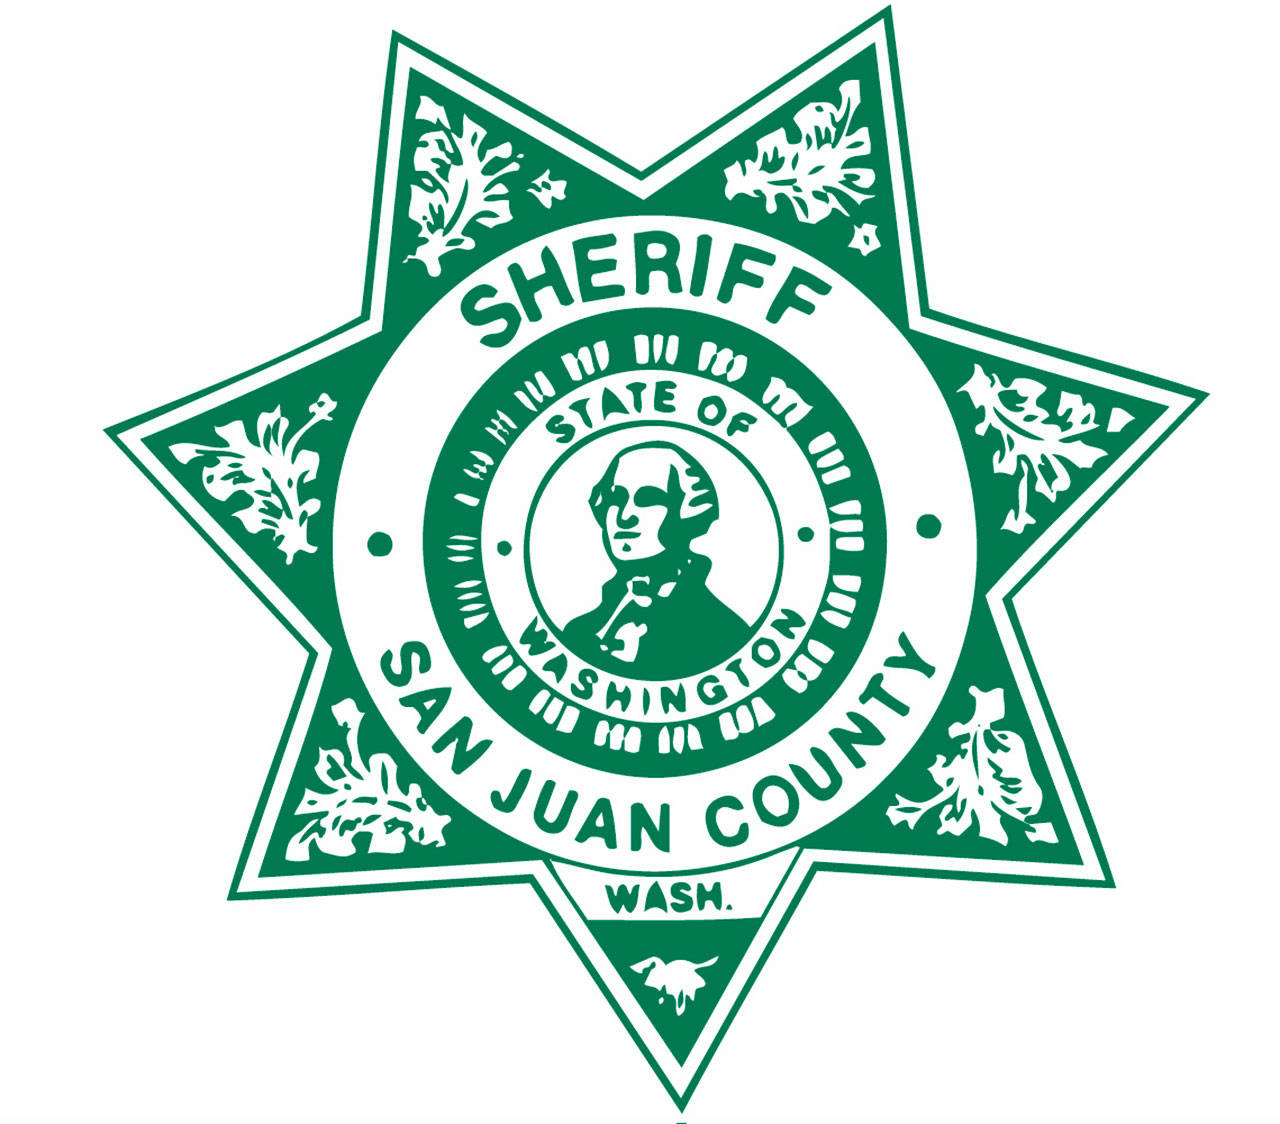 Beach battle, teen toker, serial speeder | San Juan County Sheriff’s Log